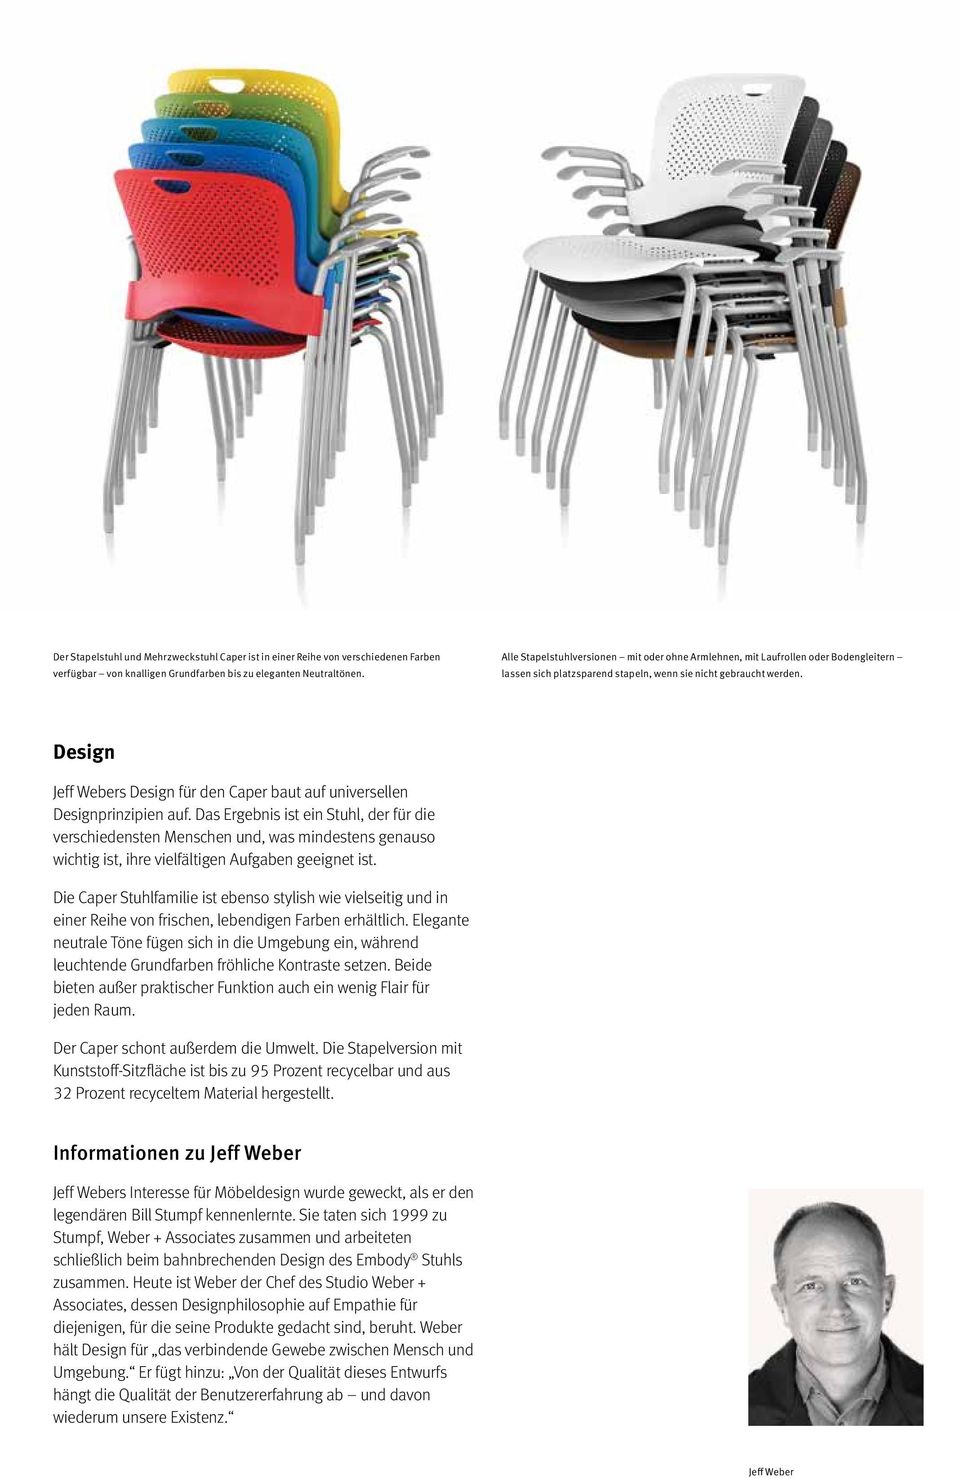 Design Jeff Webers Design für den Caper baut auf universellen Designprinzipien auf.